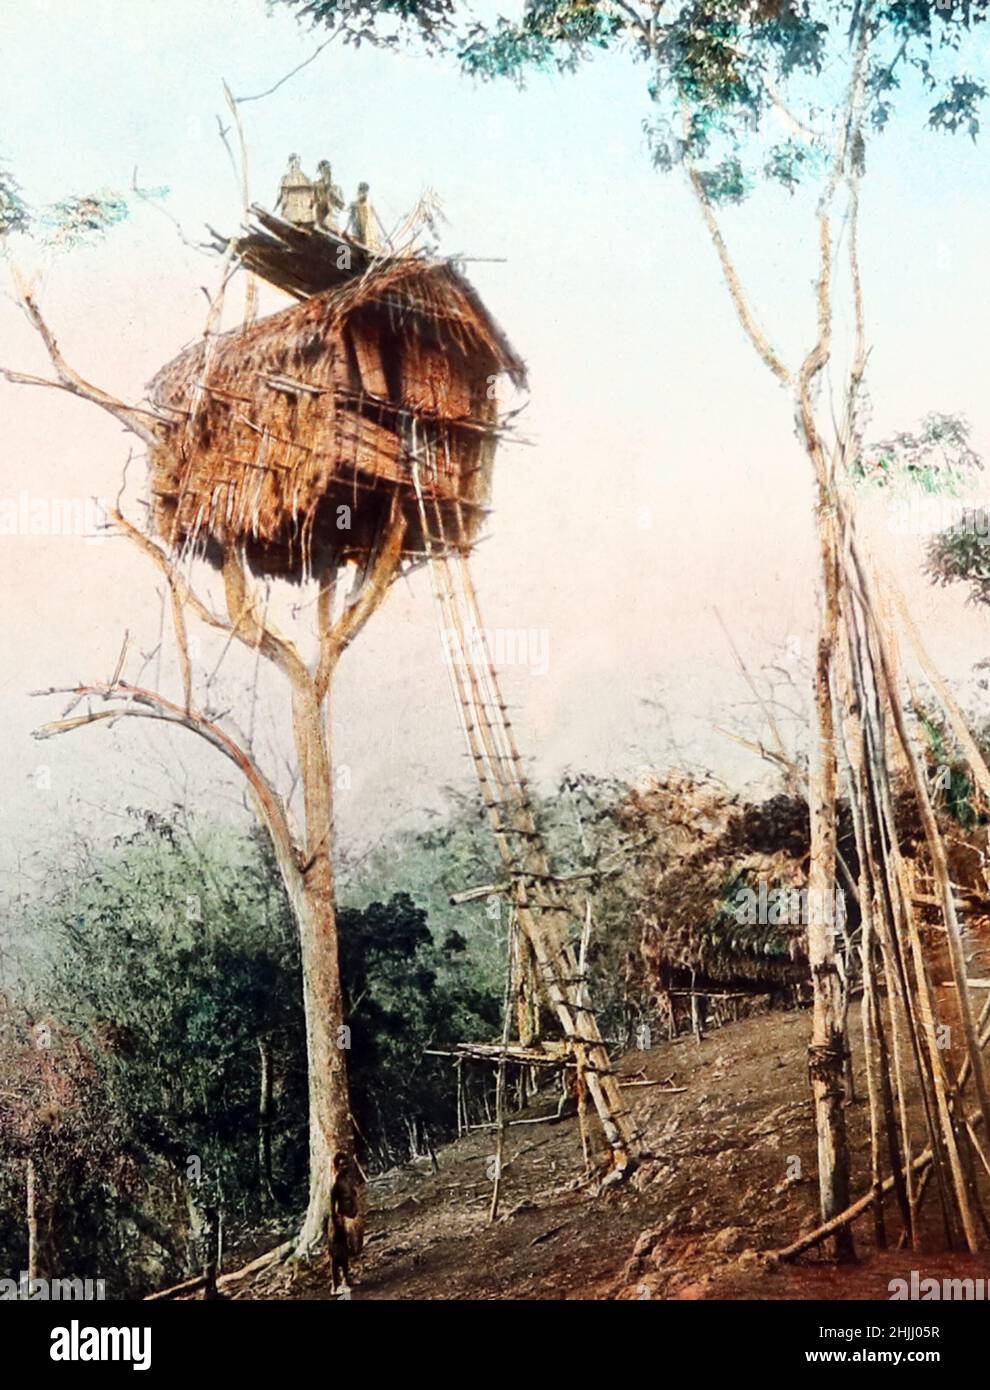 Treehouse, Papouasie-Nouvelle-Guinée, époque victorienne Banque D'Images